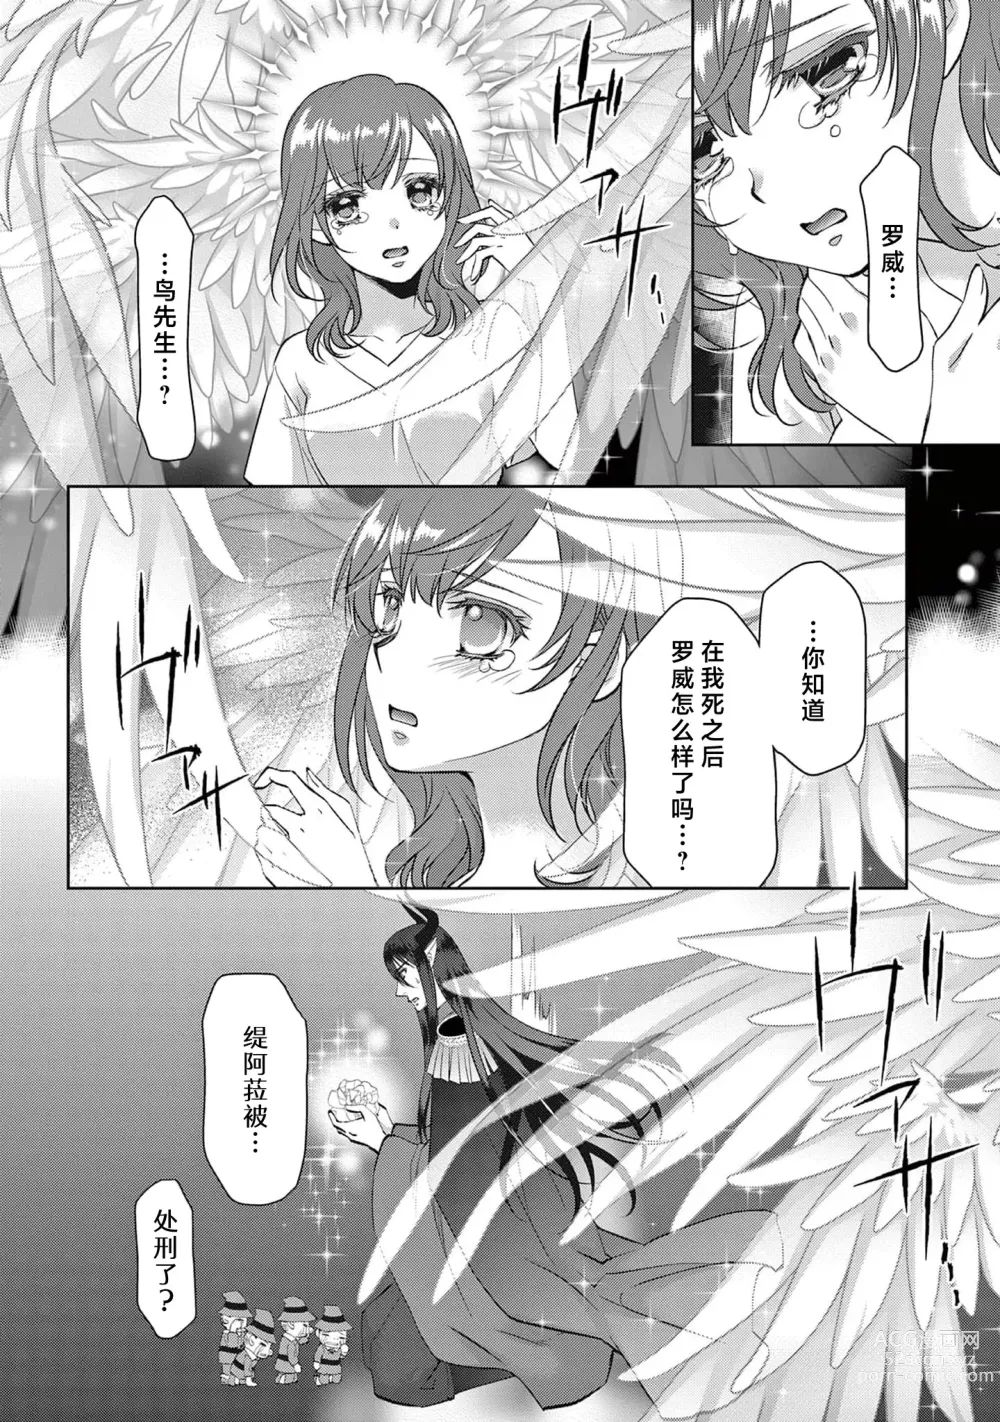 Page 307 of manga 贫困女子和史莱姆男子~软绵绵富有弹性的・甜蜜之家~ 1-7